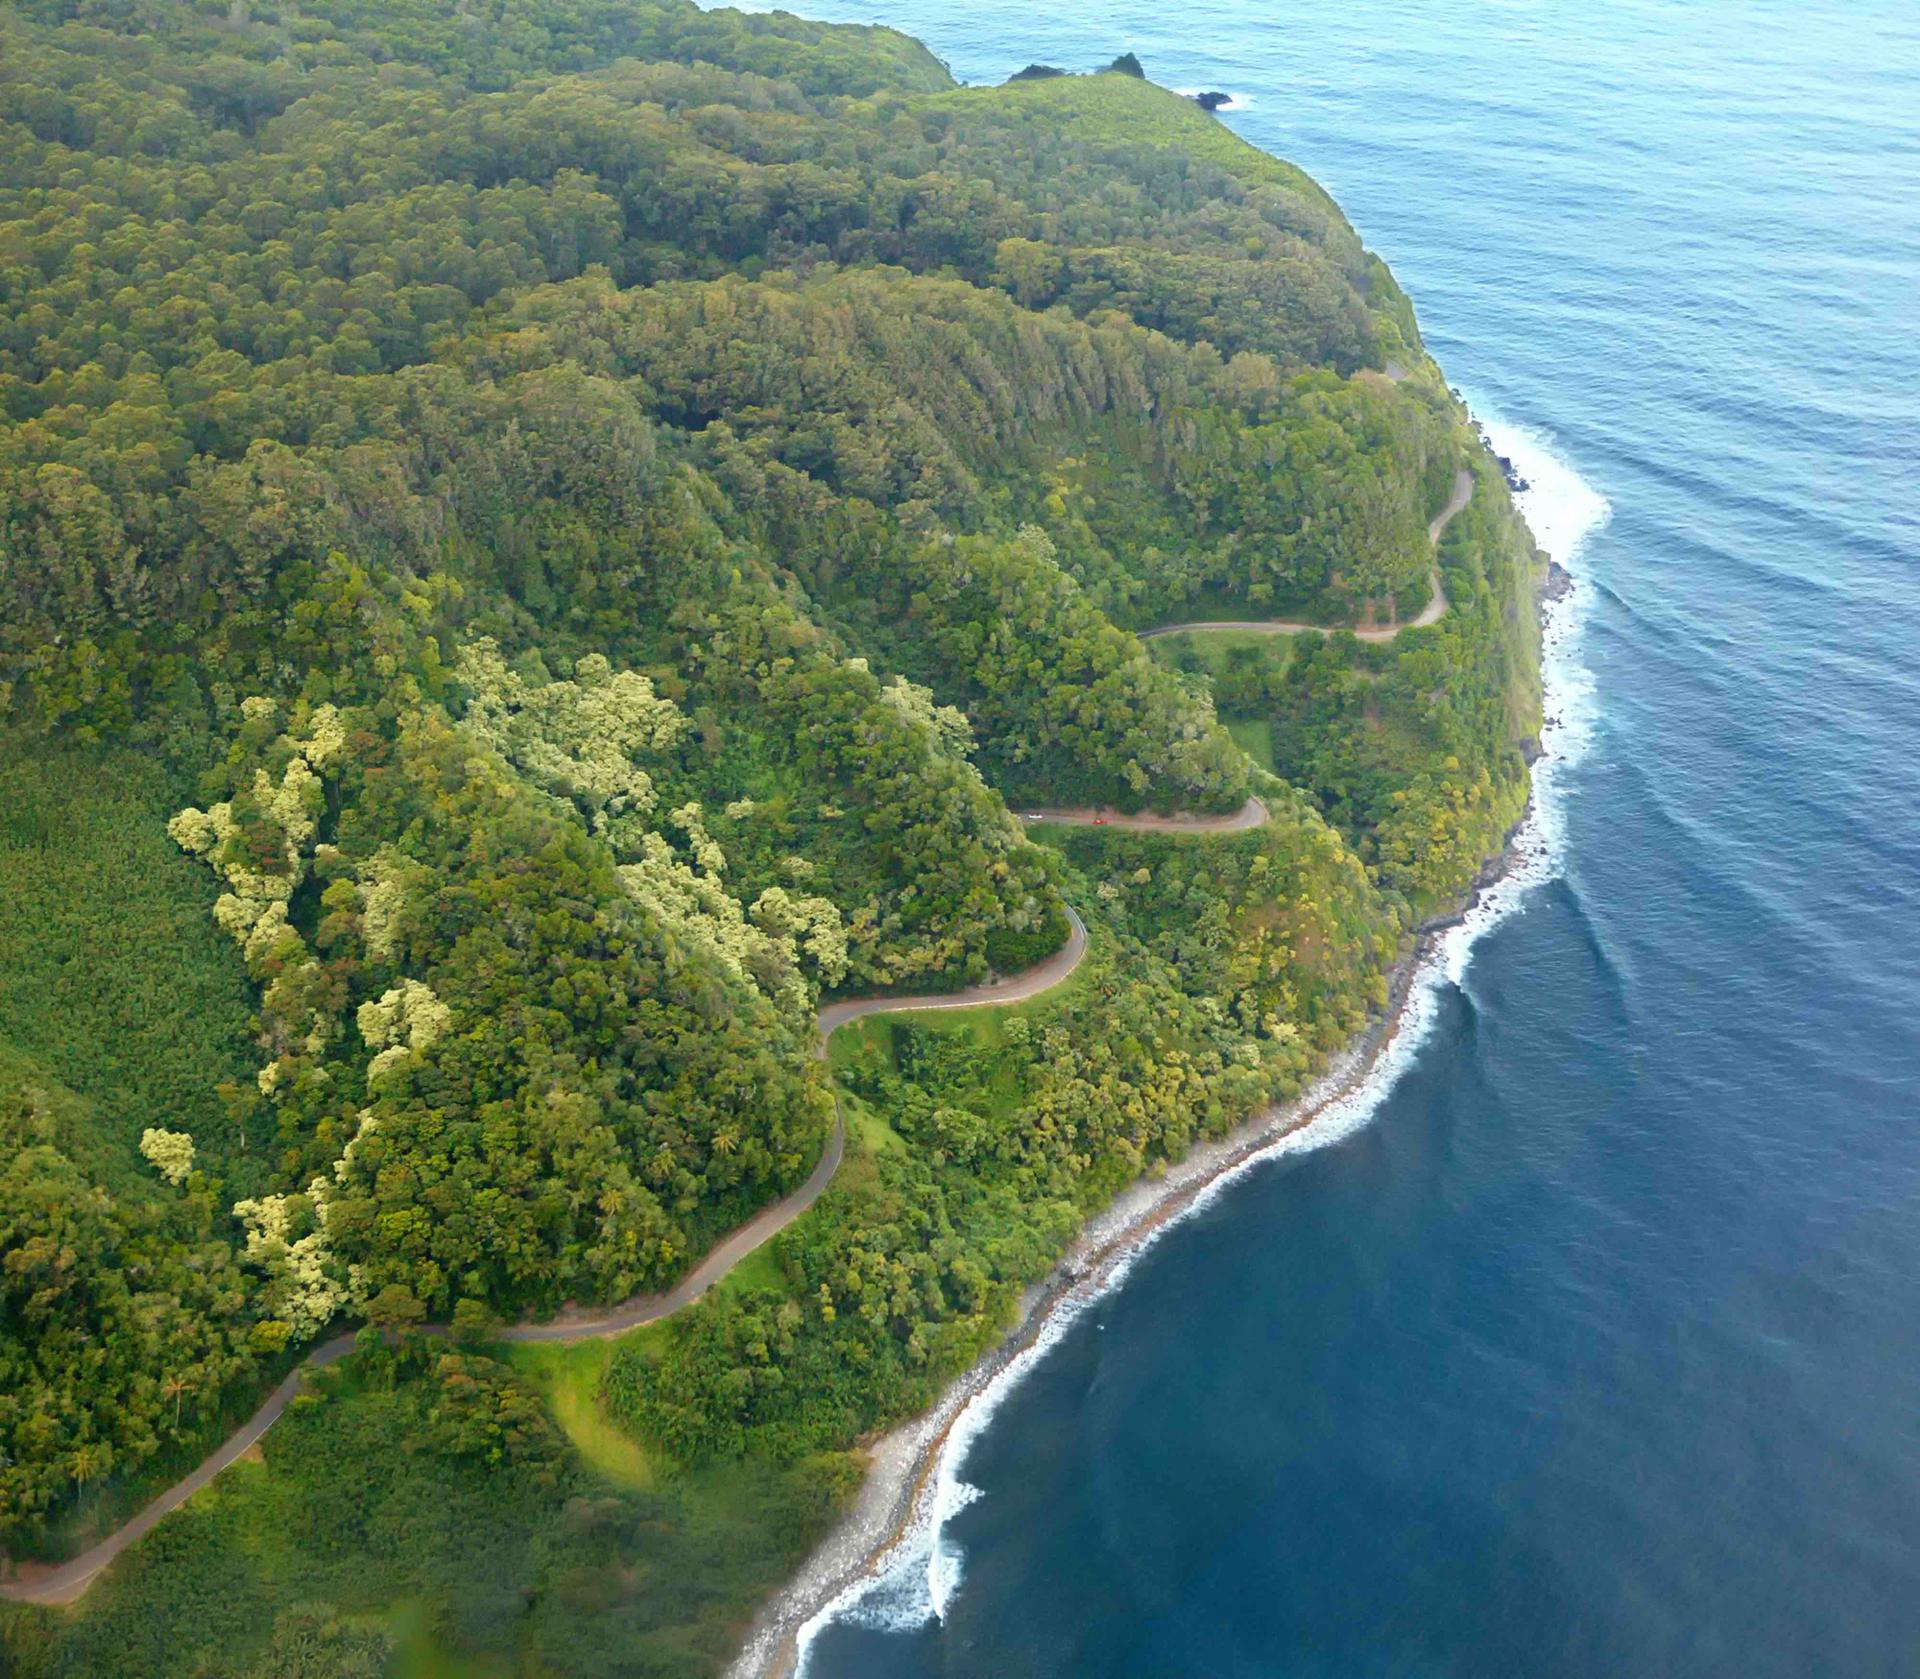 The Road to Hana - Half day Maui tours